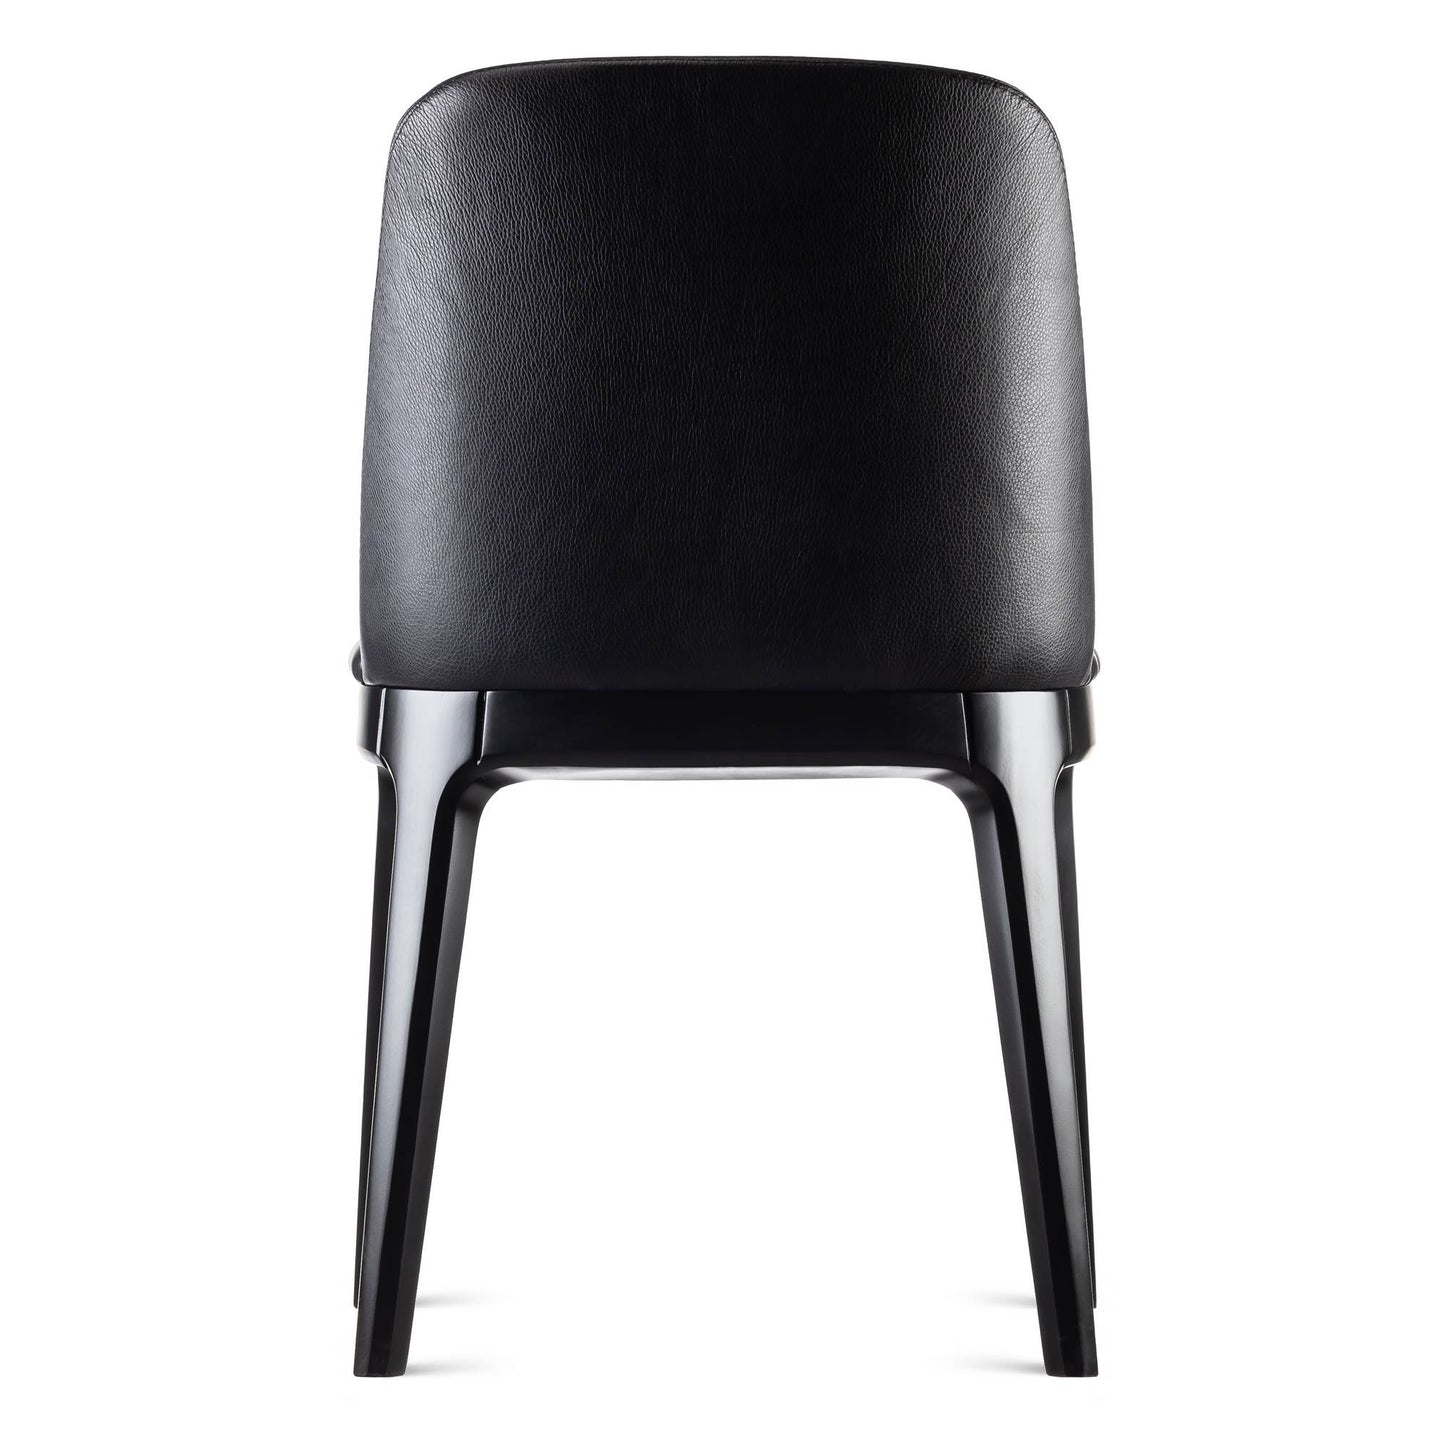 Nino chair